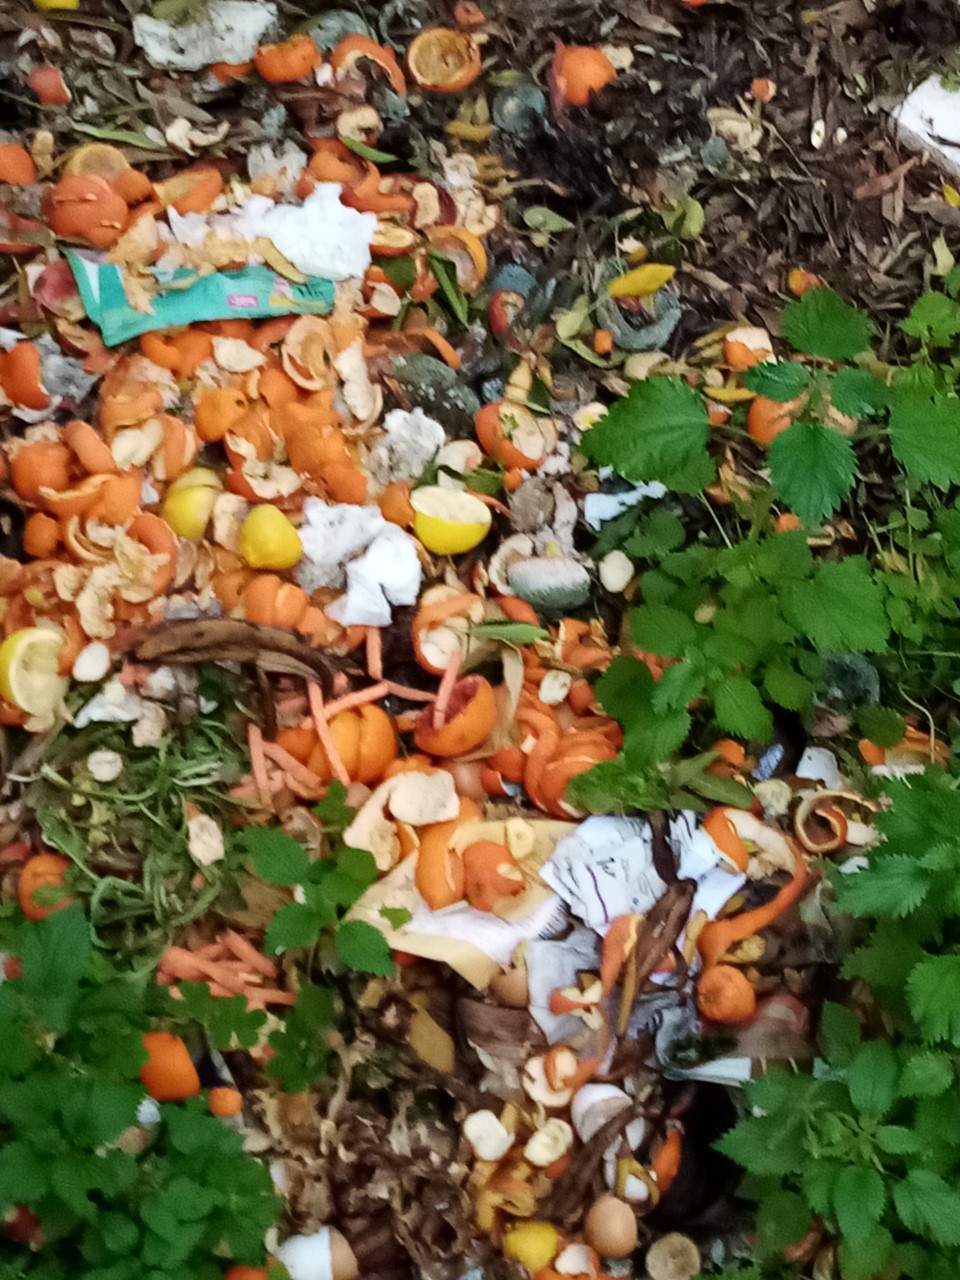 Παπάγου: Δημότης πετάει υπολείμματα τροφών δίπλα σε αυλές για να κάνει....κομποστοποίηση